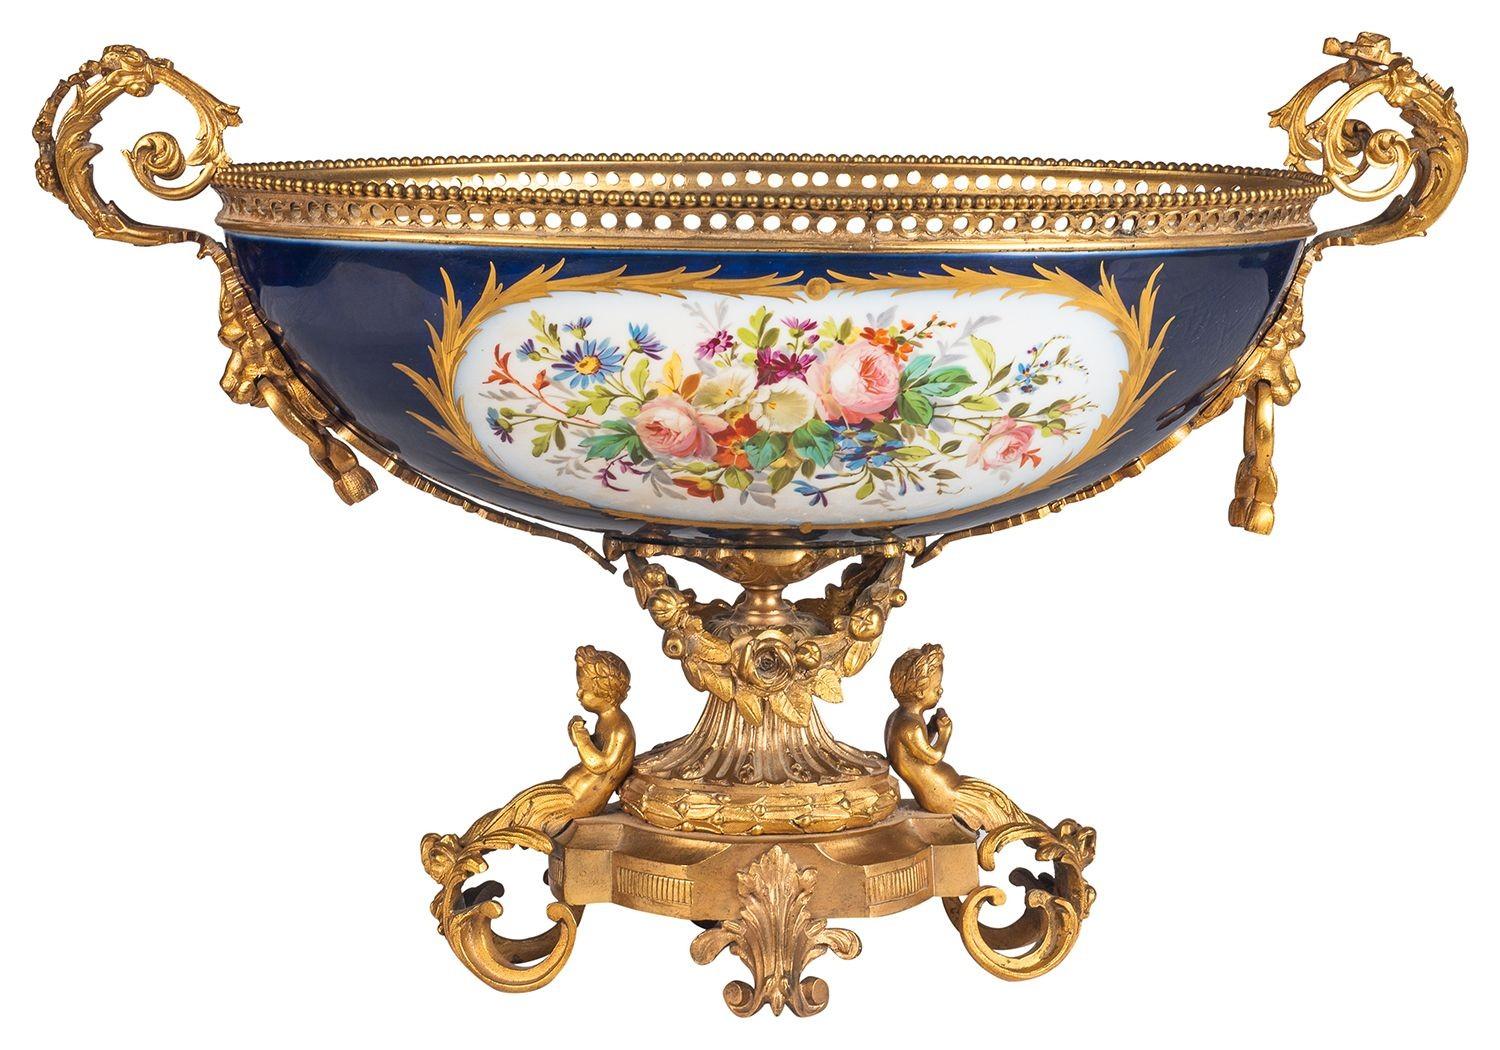 Eine sehr gute Qualität Französisch Sèvres Porzellan comport, mit wundervollen vergoldeten ormolu scrolling foliate Montierungen, mit Putten sitzen, die kobaltblauen Boden Porzellan mit eingefügten handgemalten Tafeln, die eine Szene einer jungen